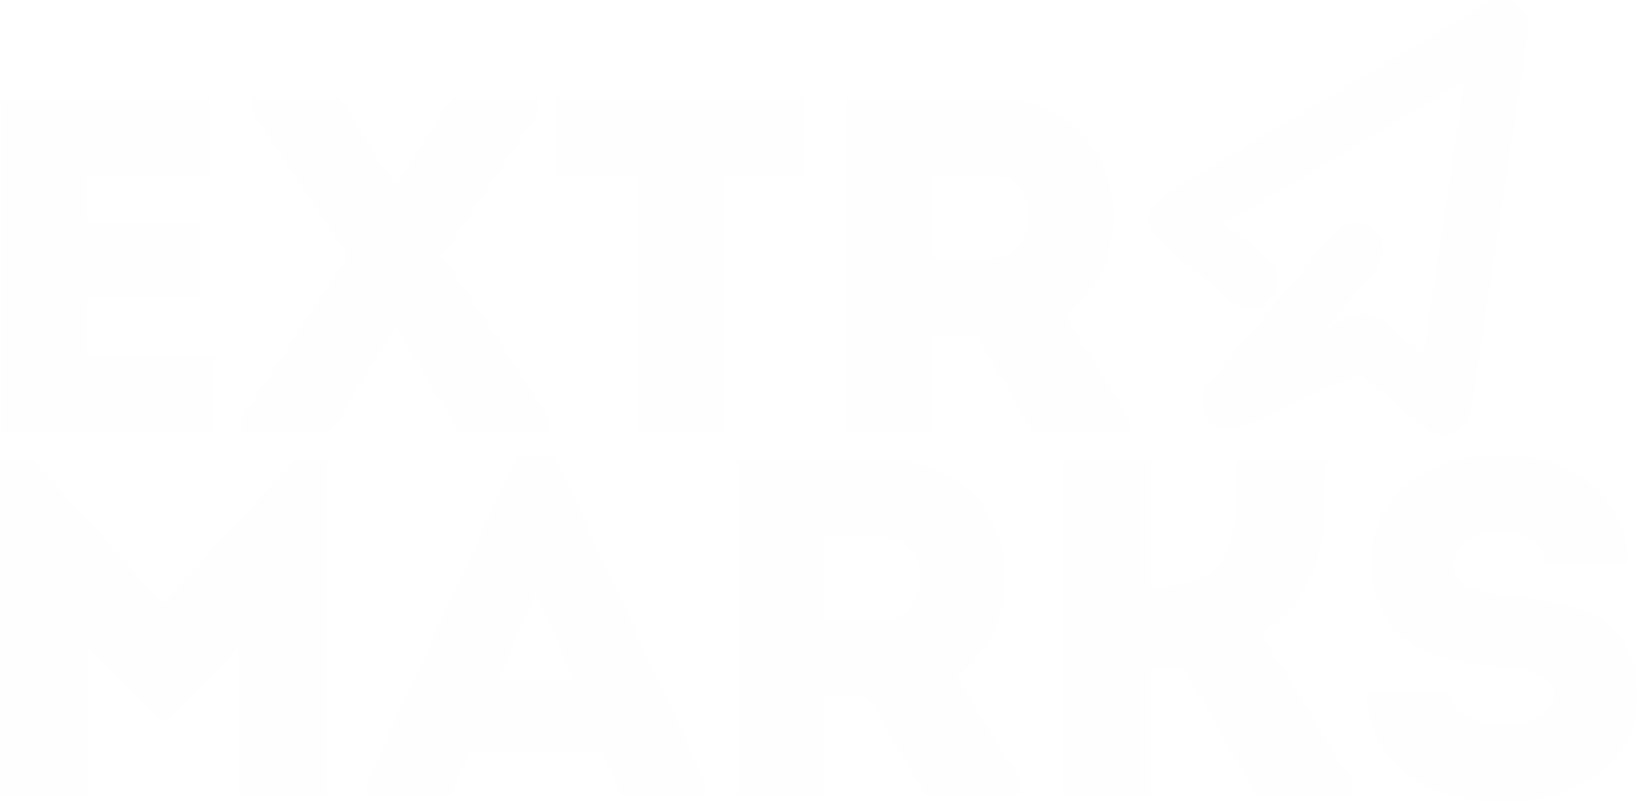 Extra marks logo